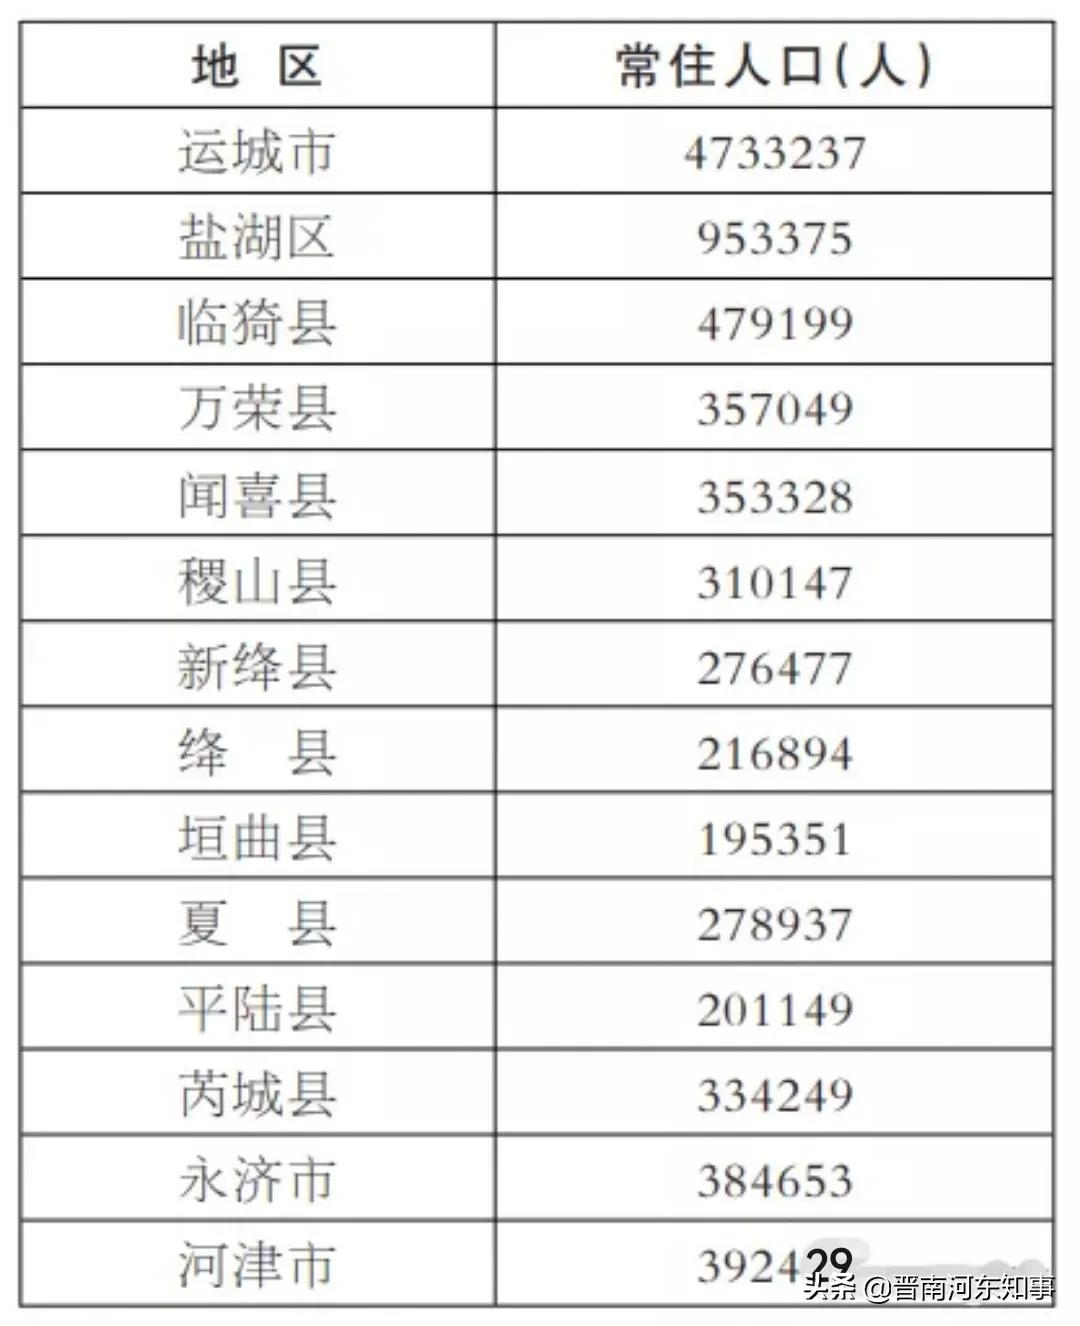 56%河津市:392429人,城镇化率5812%永济市:384653人,城镇化率46